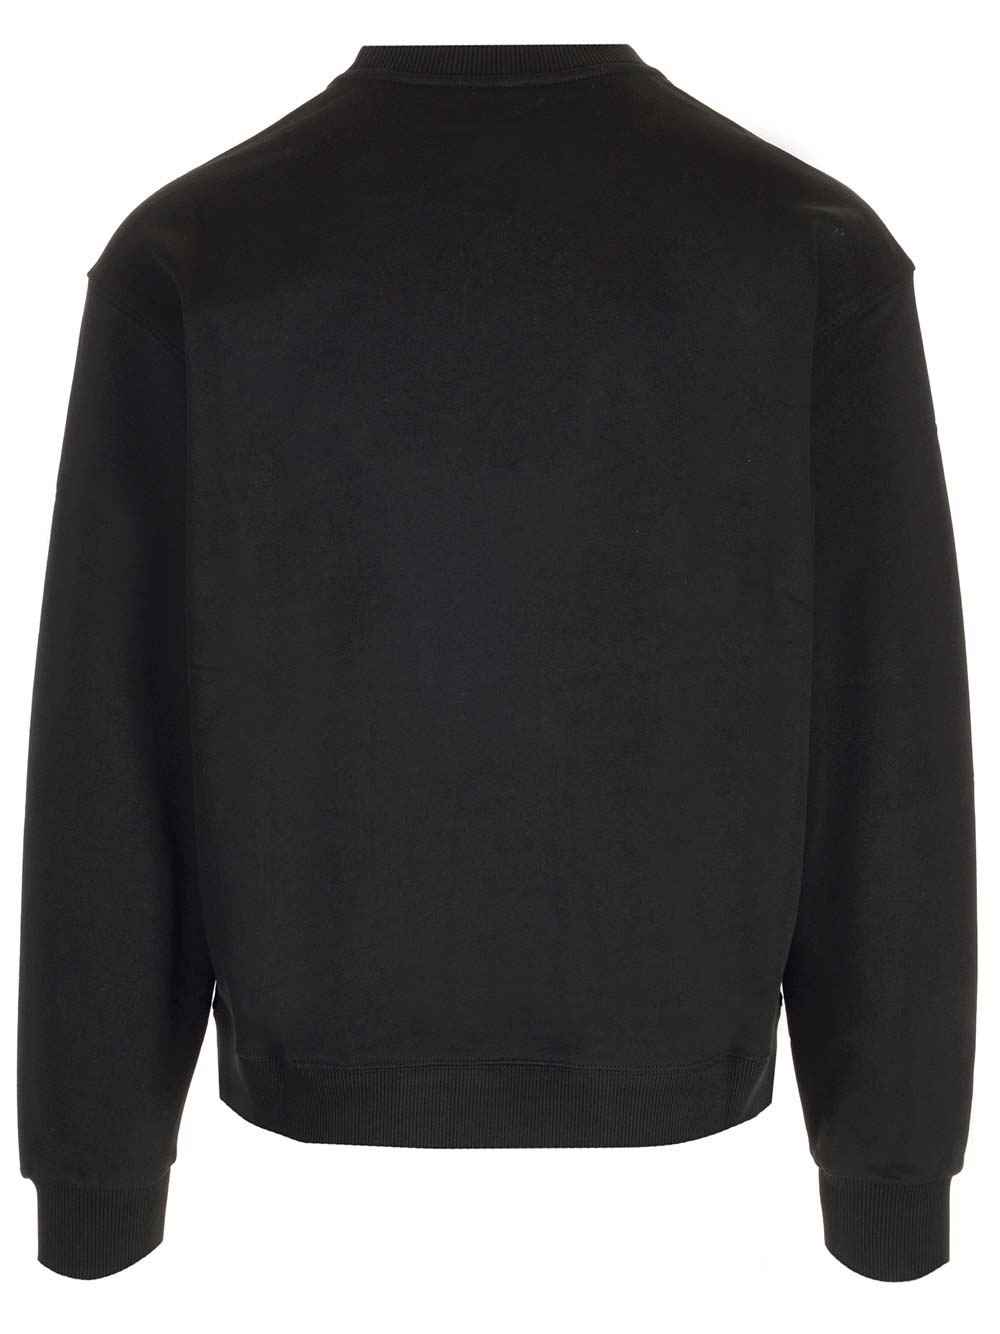 Shop Kenzo Boke Crest Classic Sweatshirt In Black